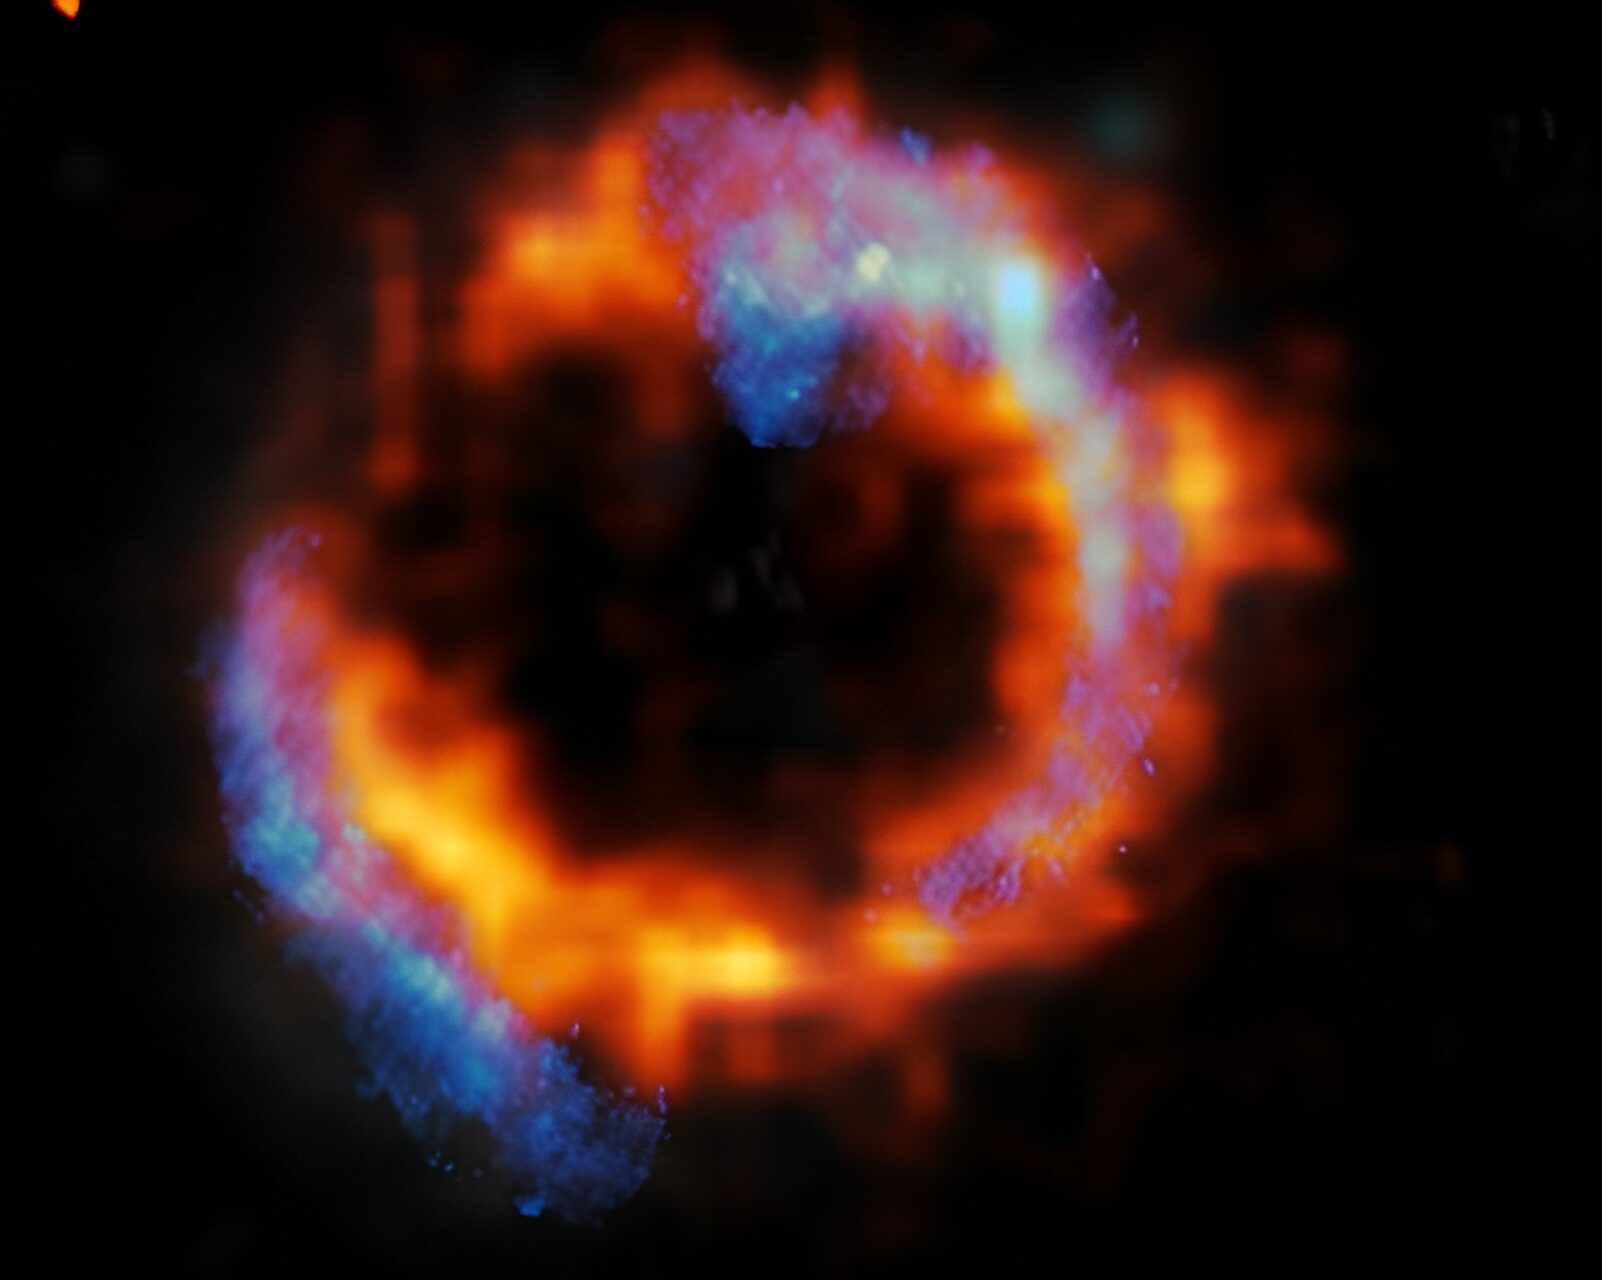 Udaljena galaksija PJ0116-24, hiper sjajna infracrvena galaksija (HyLIRG). Hladni plin prikazan je plavom bojom, dok je topli plin prikazan crvenom bojom. Zasluge: ALMA (ESO/NAOJ/NRAO)/ESO/D. Liu i sur.